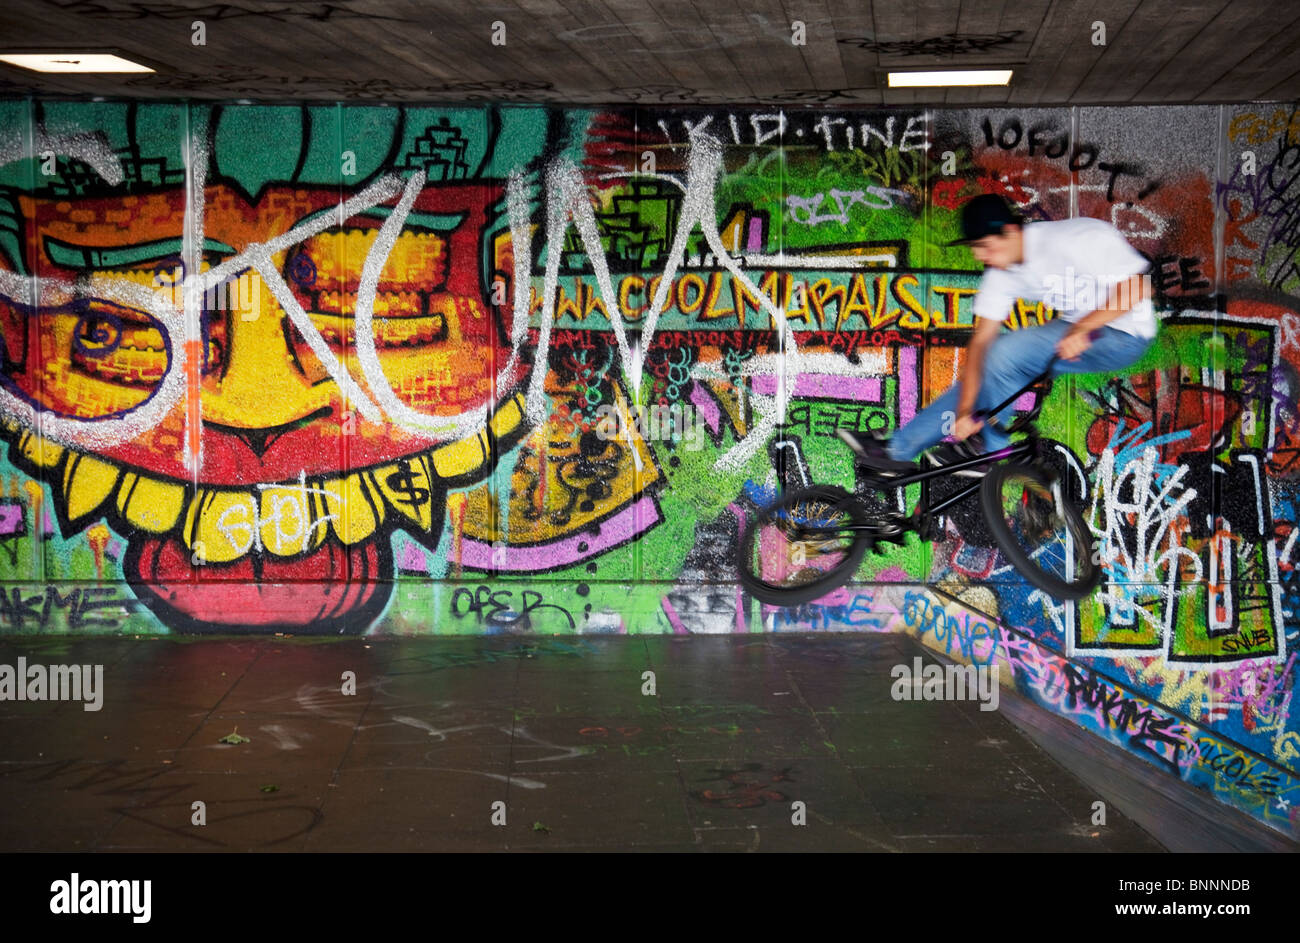 L'undercroft sur la Southbank, populaire avec BMX tricks et compétences, graffiti artistes etc. Banque D'Images